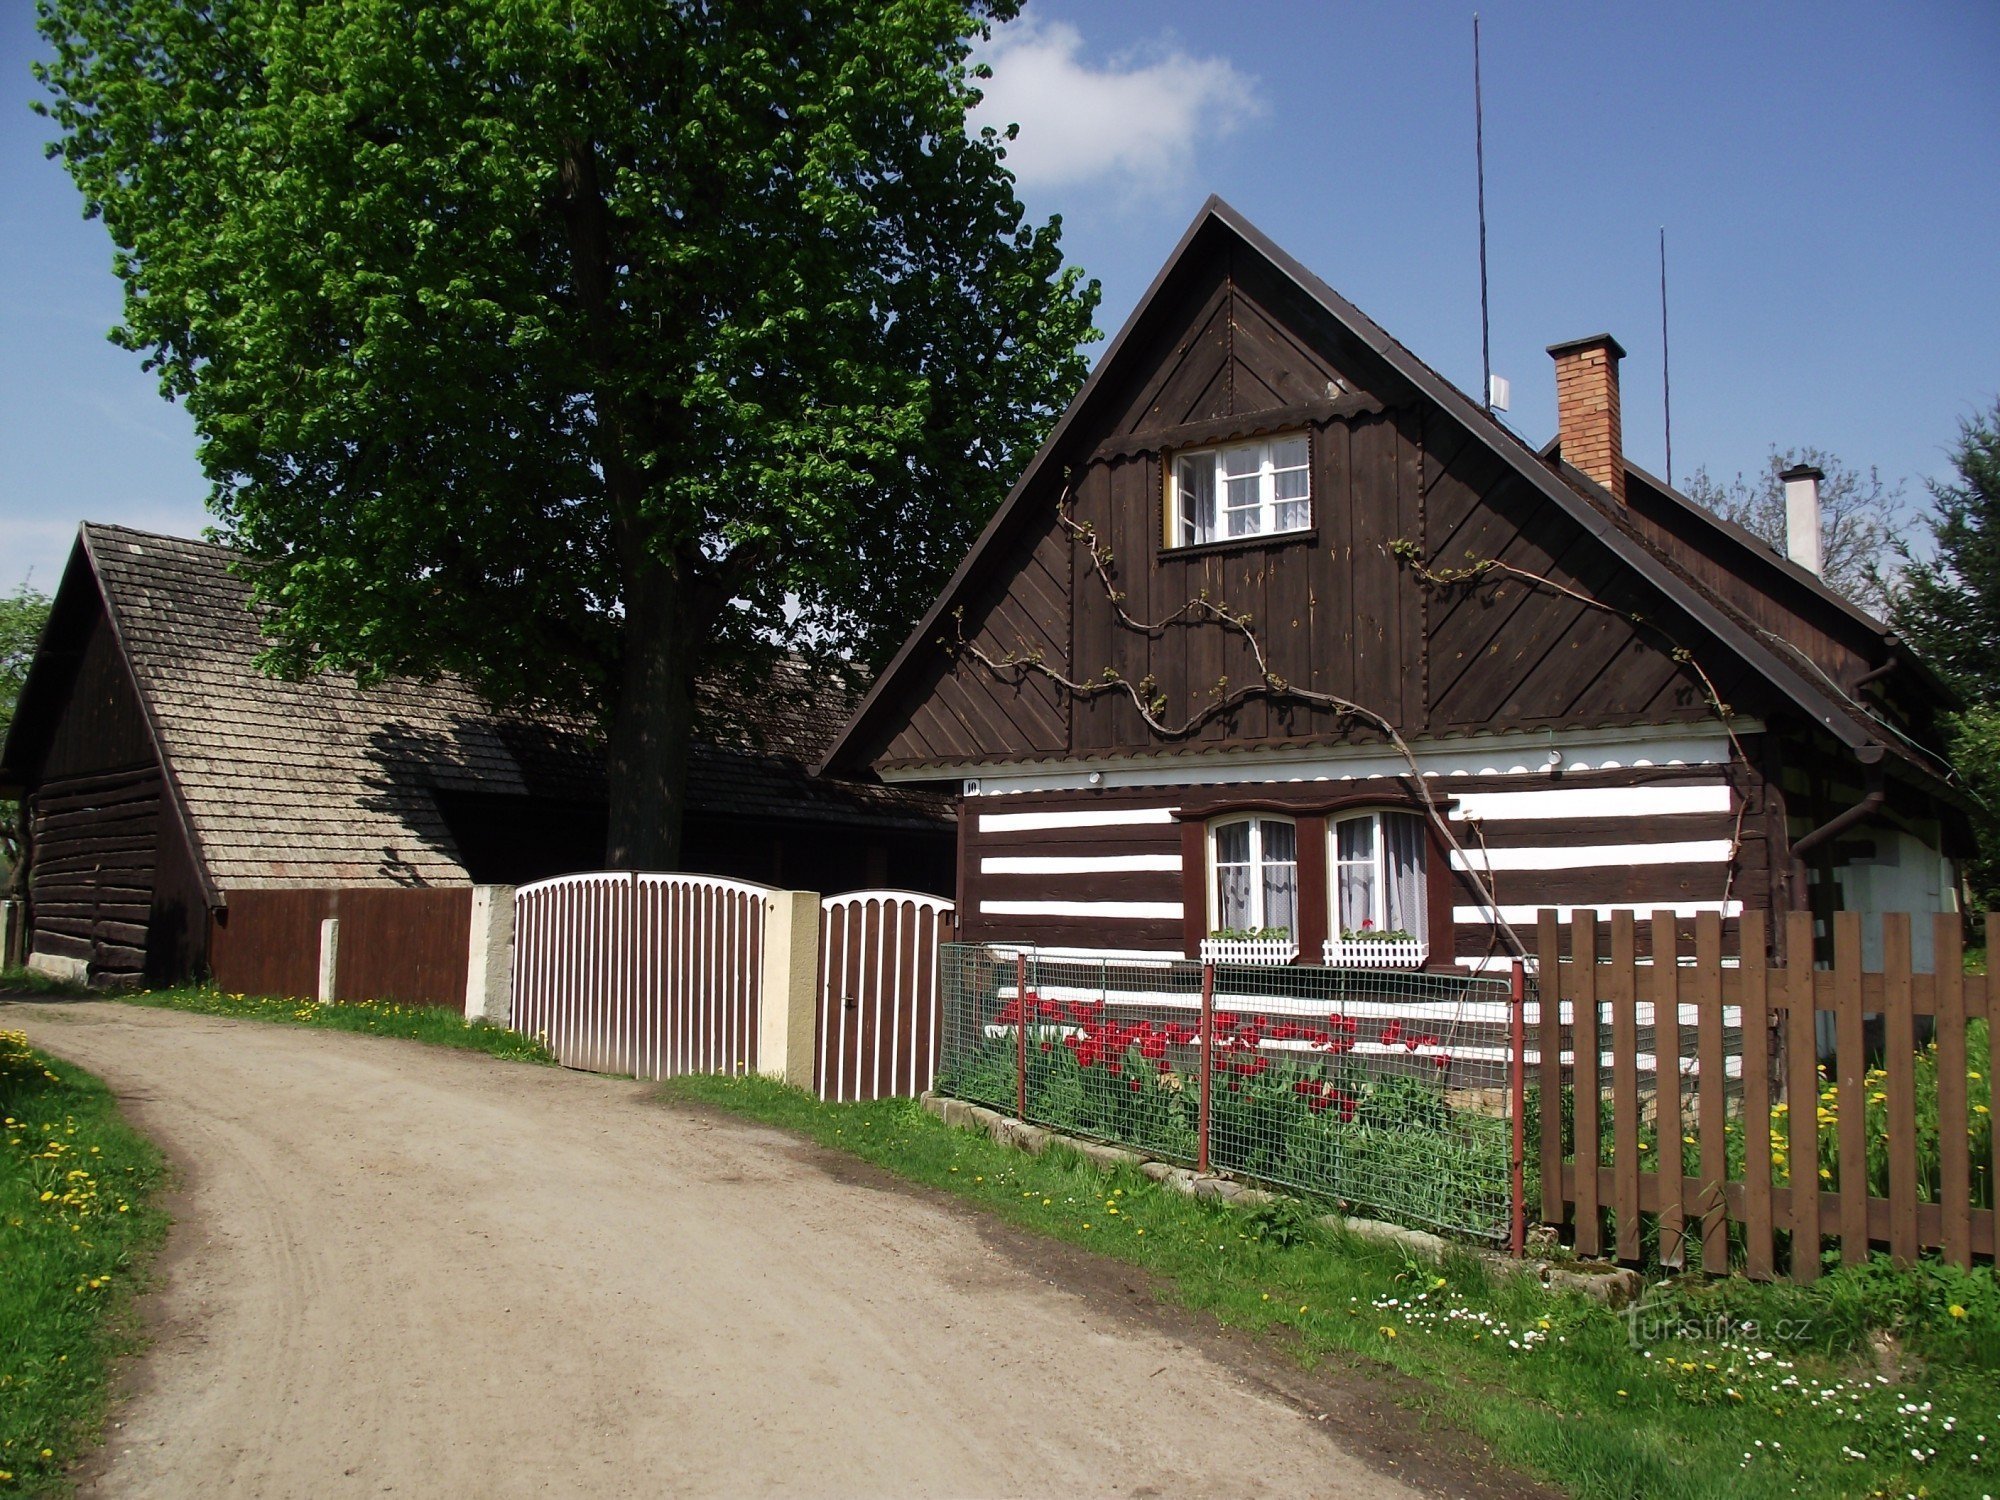 Vesec (gần Sobotka) - một bảo tàng ngoài trời trong làng, Hollywood của Séc và Liptákov nổi tiếng